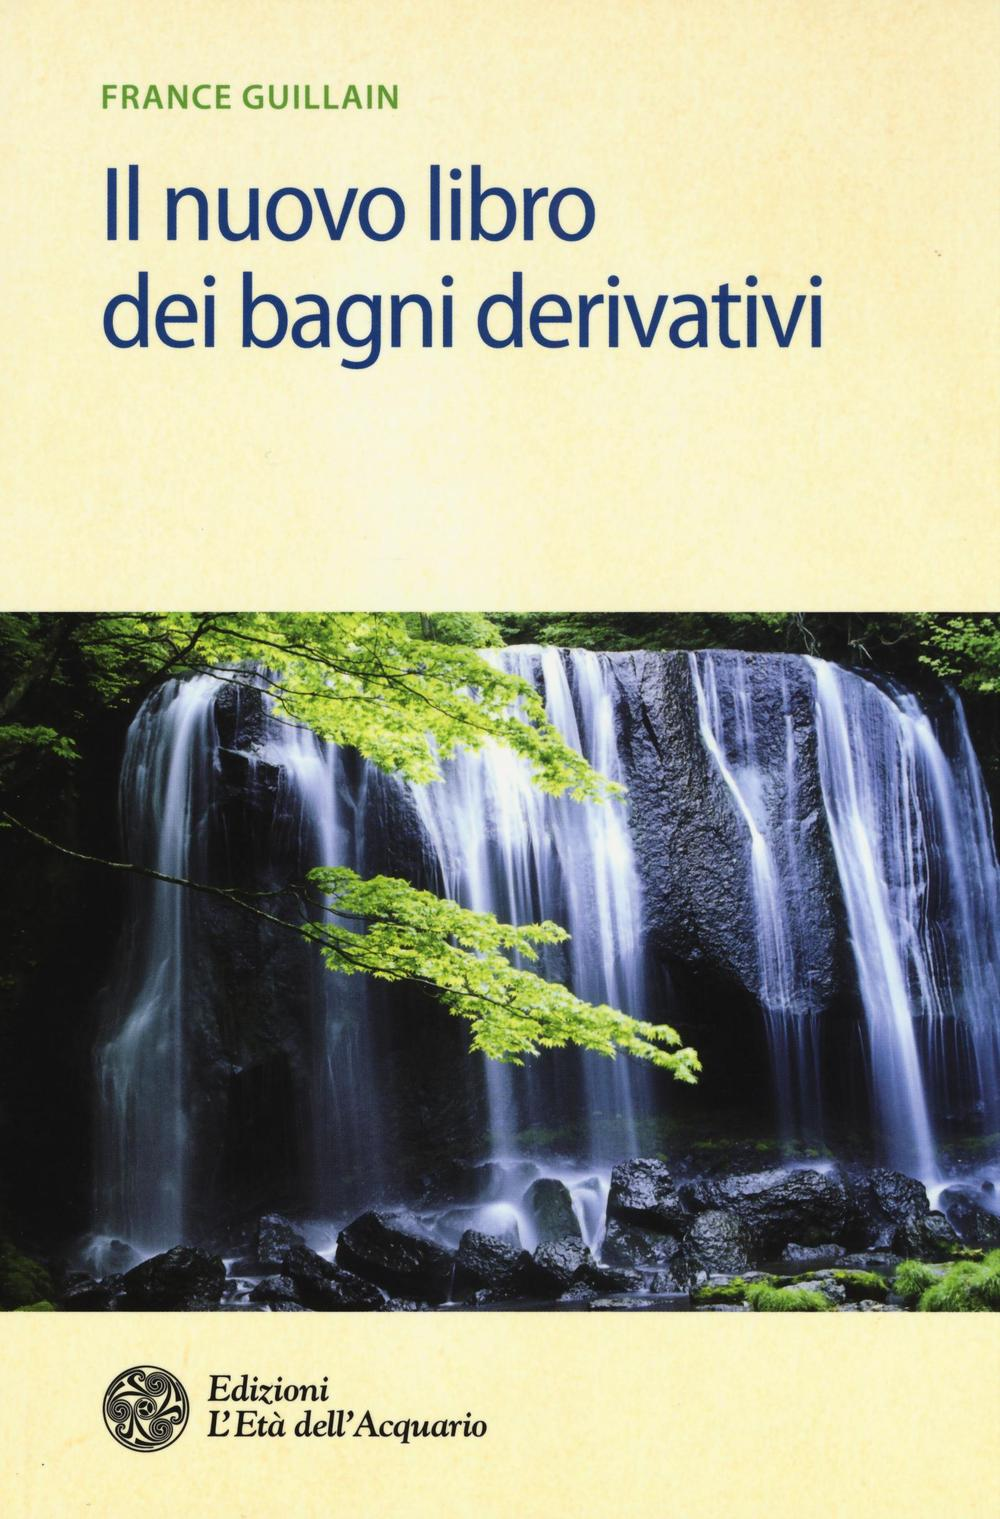 Image of Il nuovo libro dei bagni derivativi